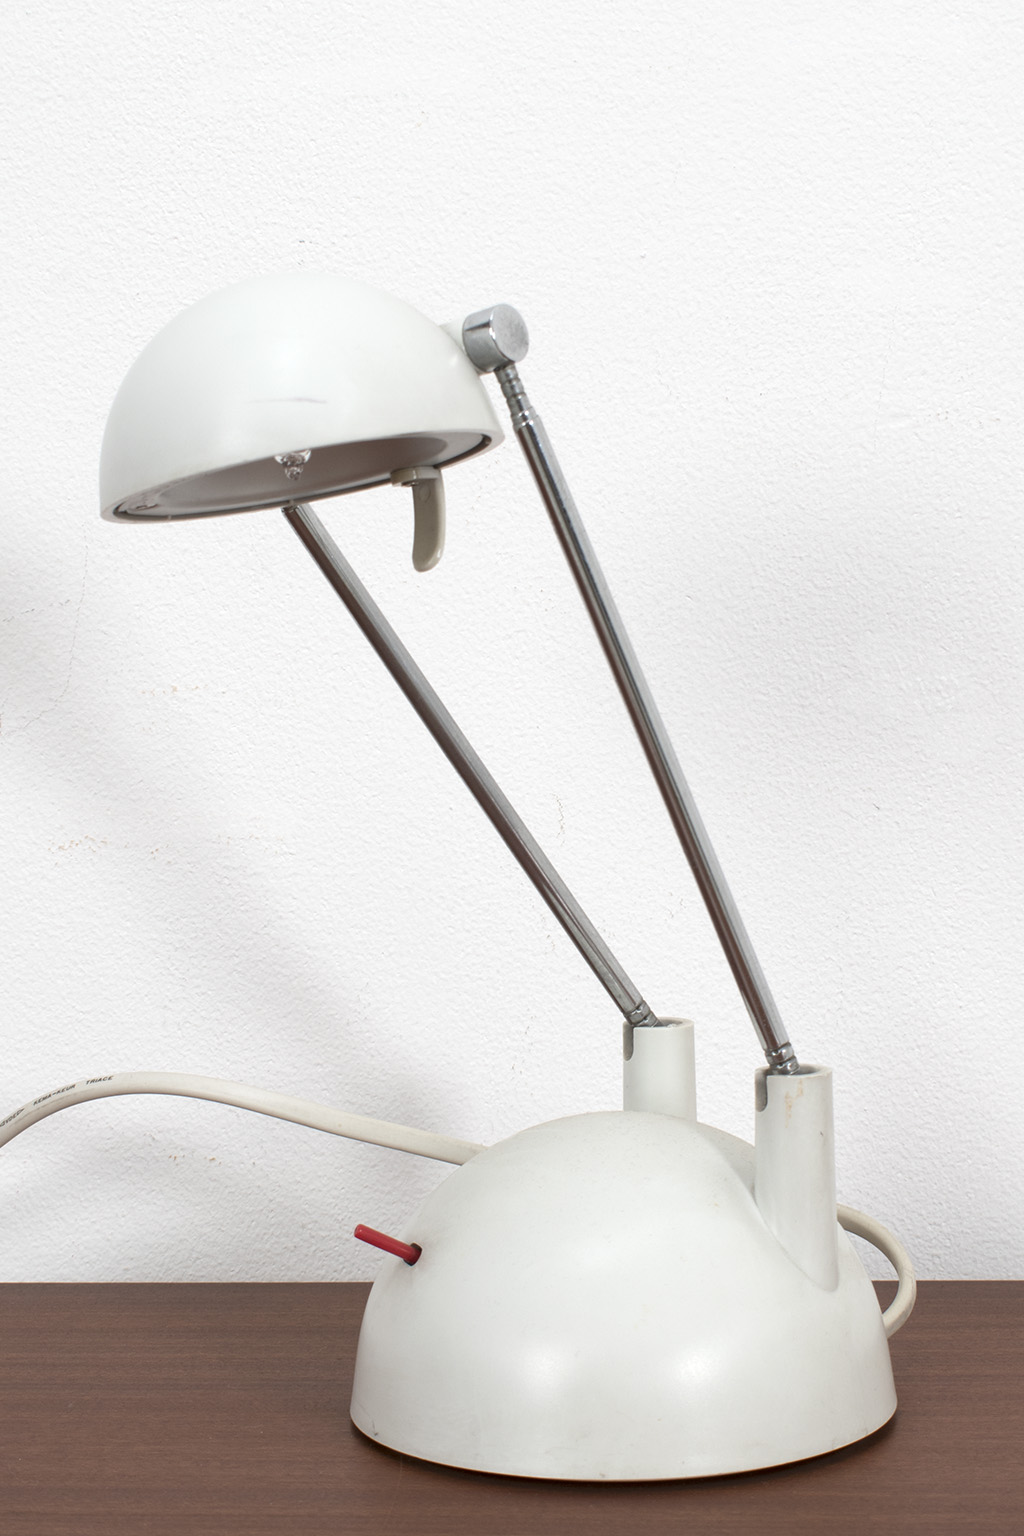 Oxide geweld Raad eens Vintage halogeen lamp - Decennia Design